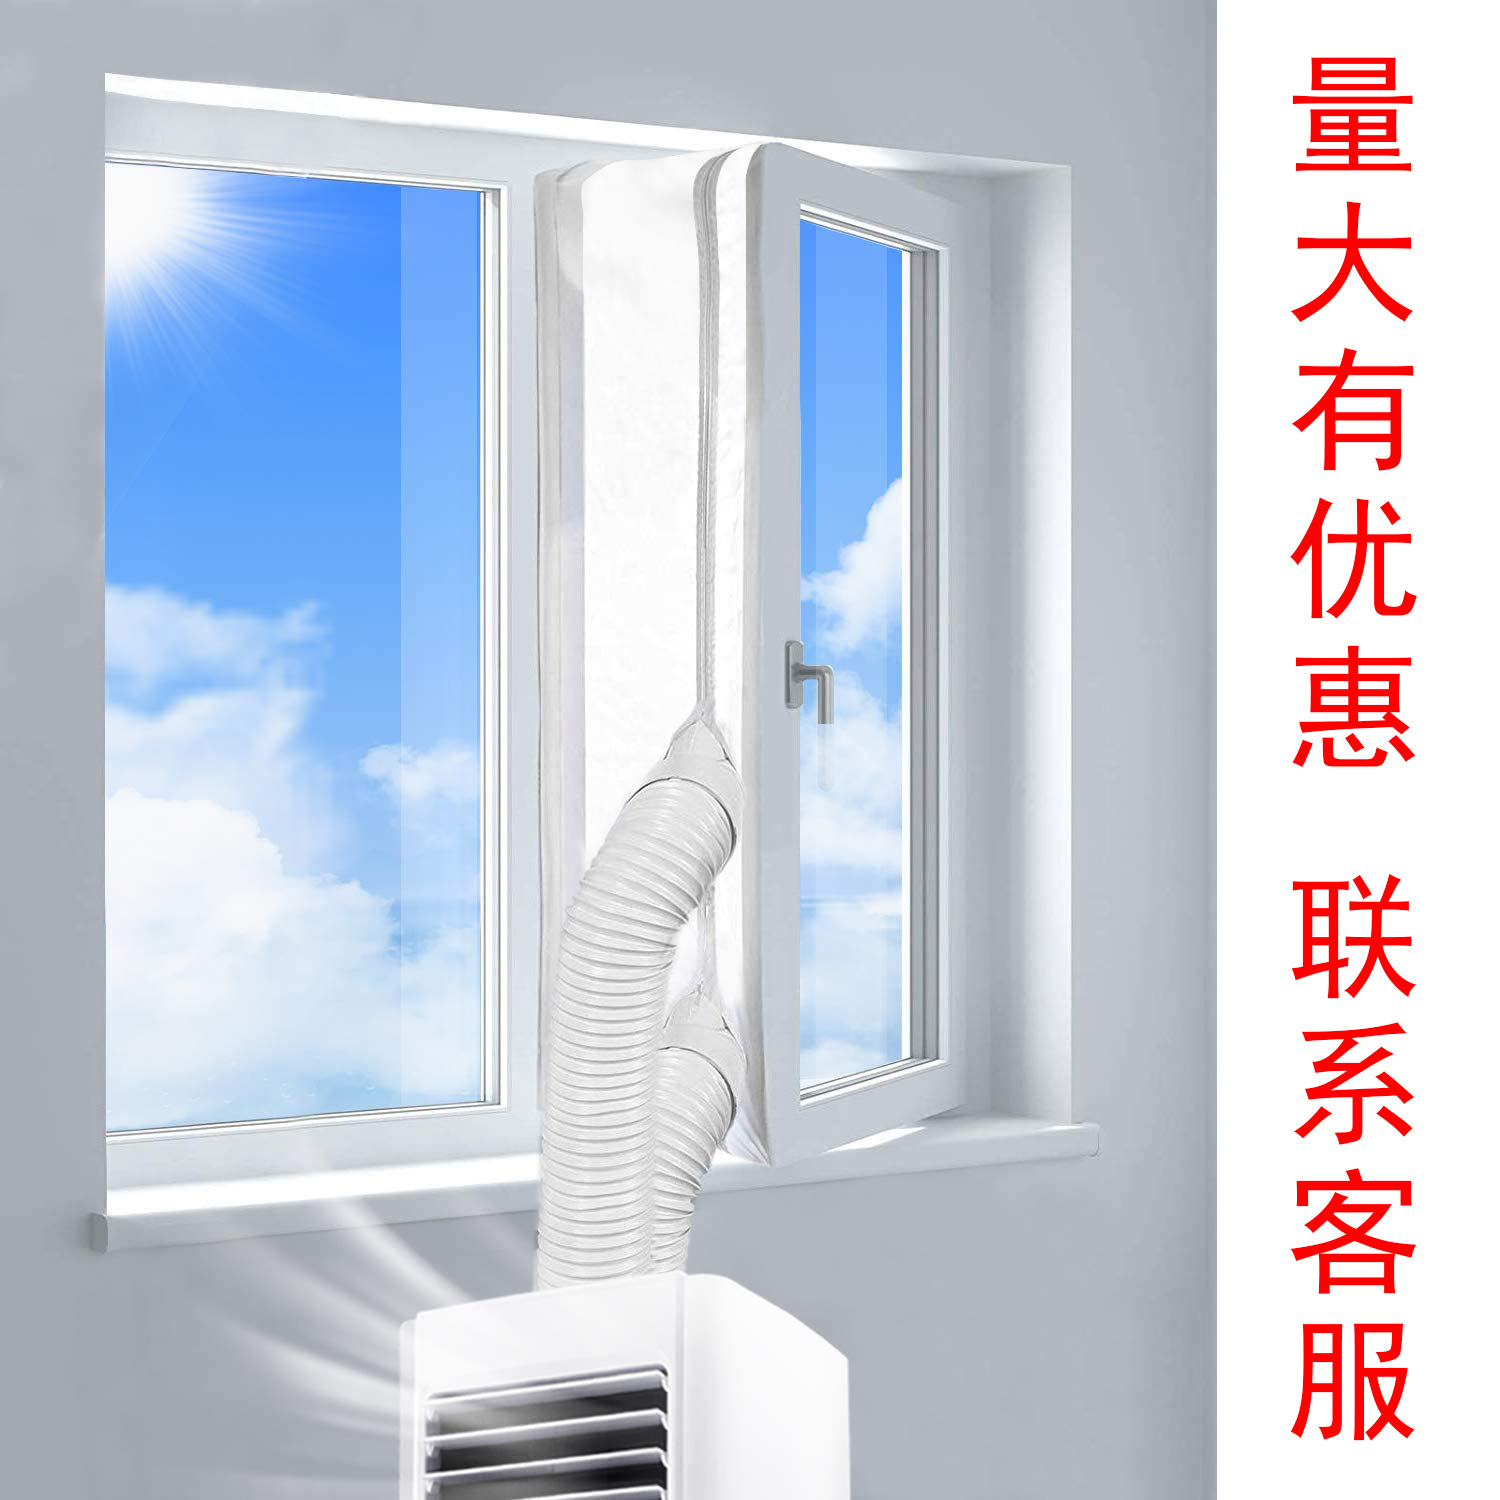 Air Conditioner Sealing Cloth Sliding Door Sealing Soft Cloth Air Conditioner Exhaust Pipe Mobile Air Conditioner Wind Shield Cloth Baffle